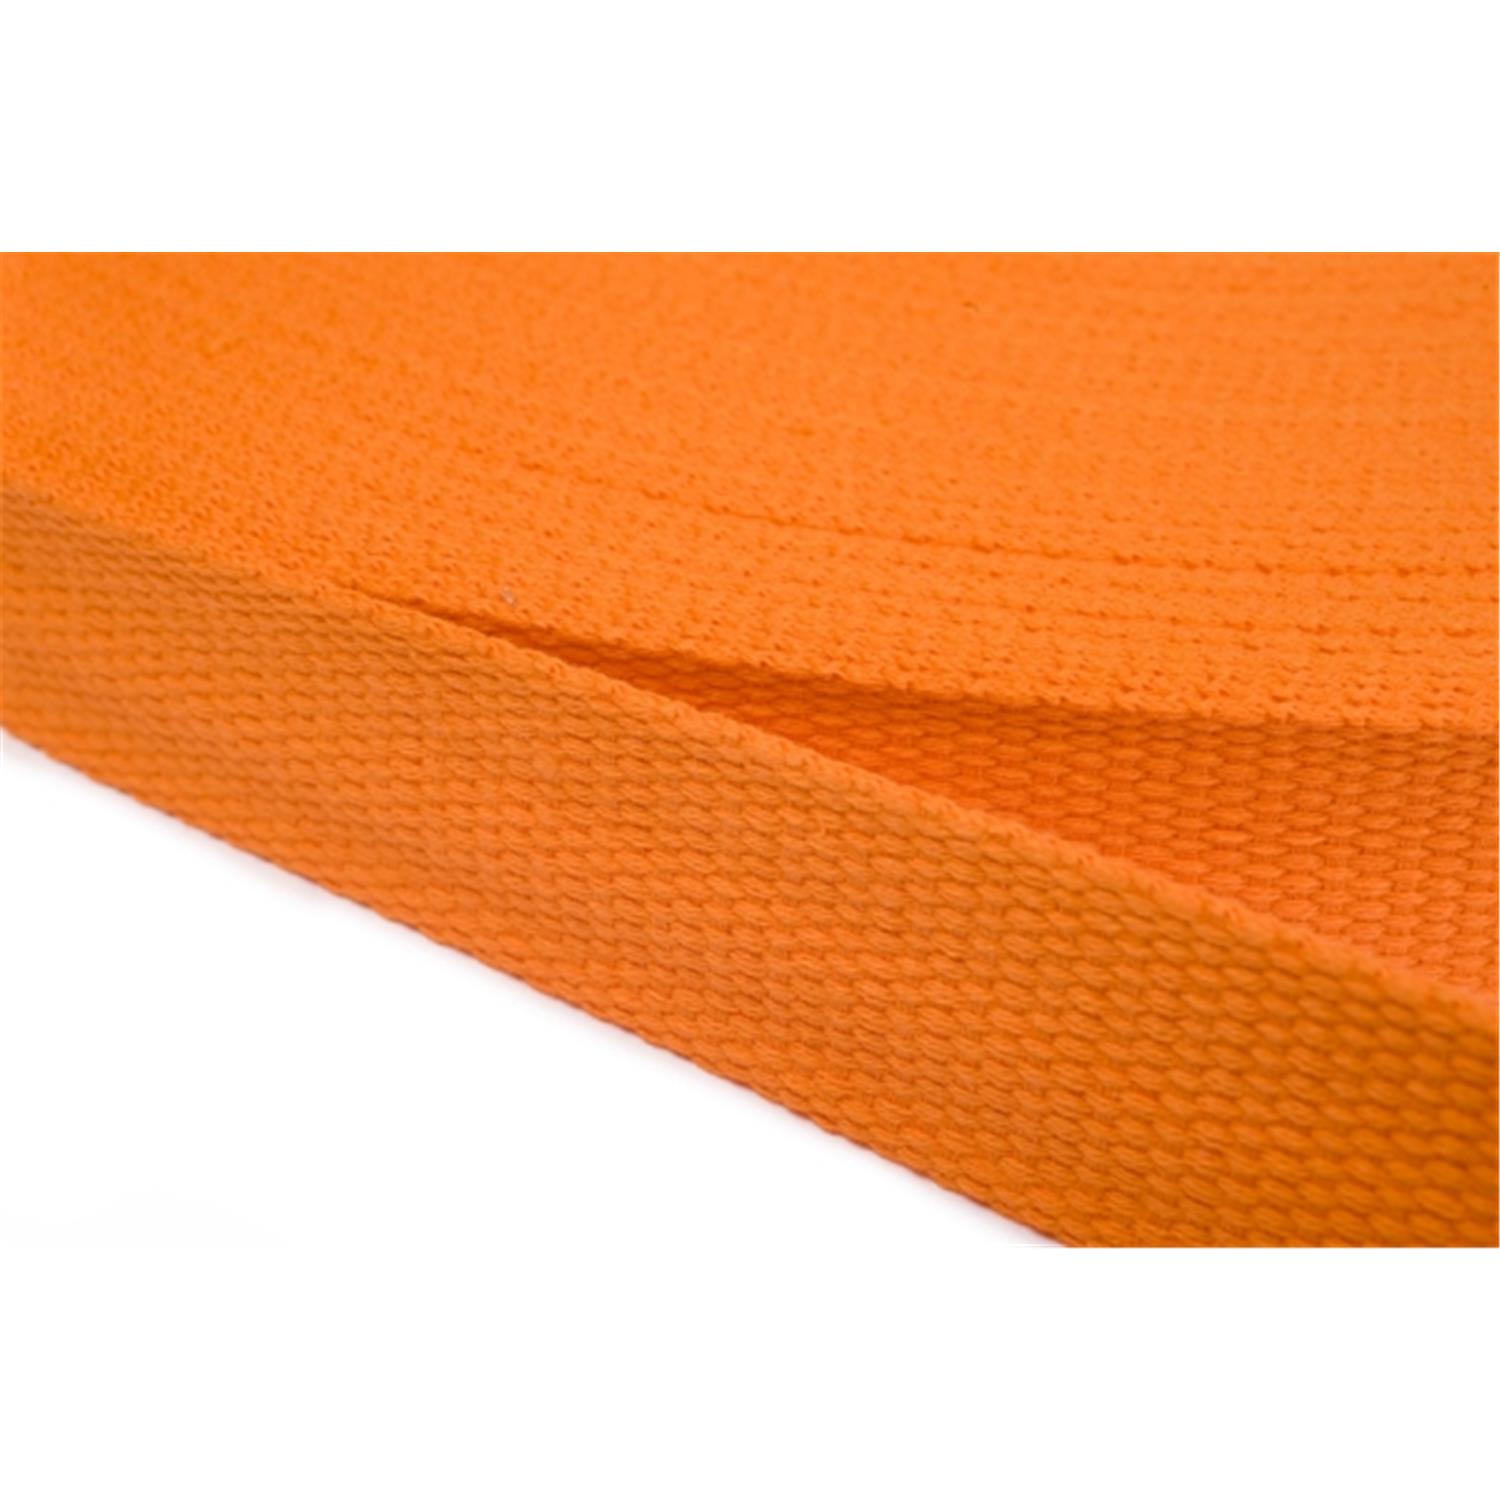 Gurtband aus Baumwolle 15mm in 20 Farben 06 - orange 12 Meter